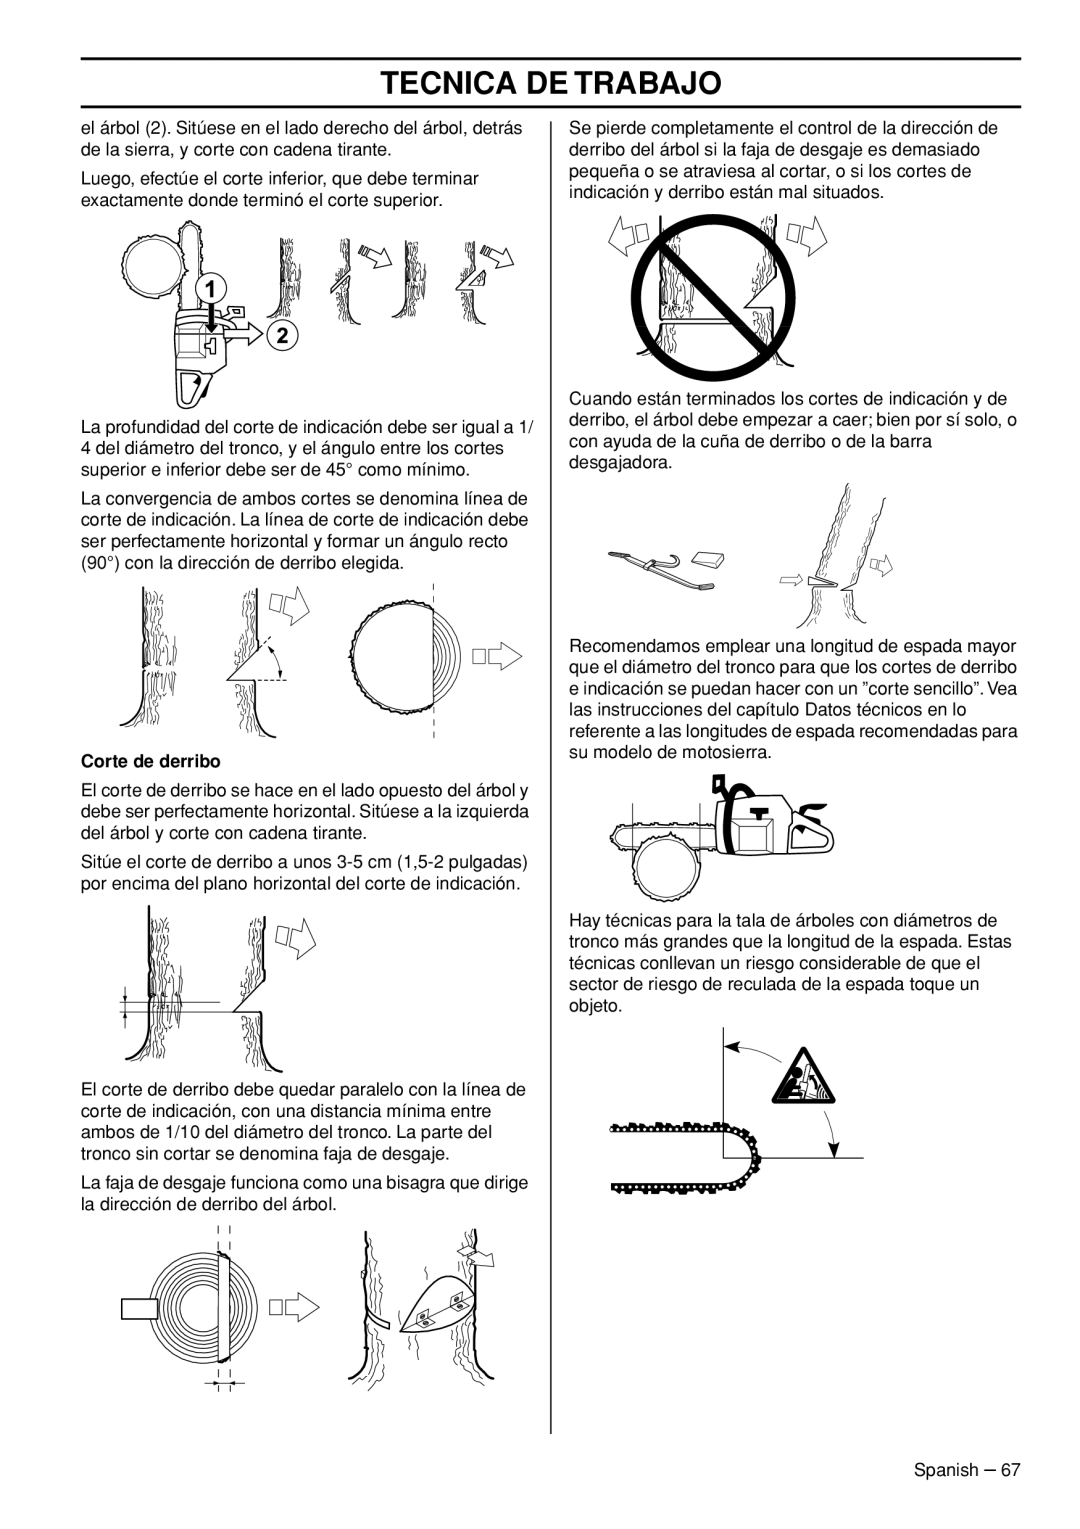 Husqvarna 445e TrioBrake manual Tecnica De Trabajo, Corte de derribo 